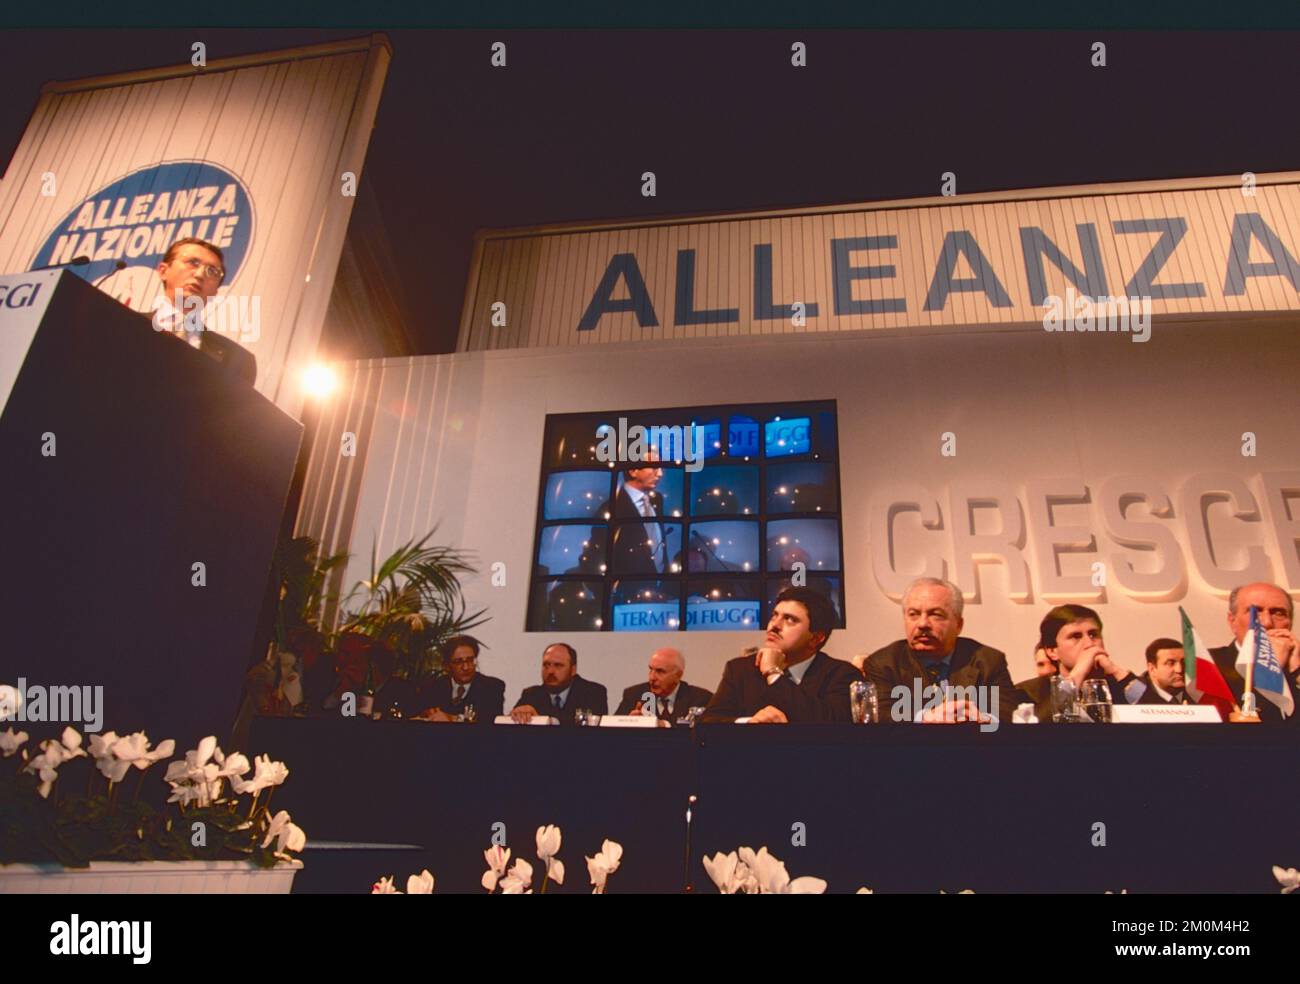 Des politiciens italiens de droite écoutent le discours de Gianfranco fini lors du congrès du parti Alleanza Nazionale, Fiuggi, Italie 1995 Banque D'Images